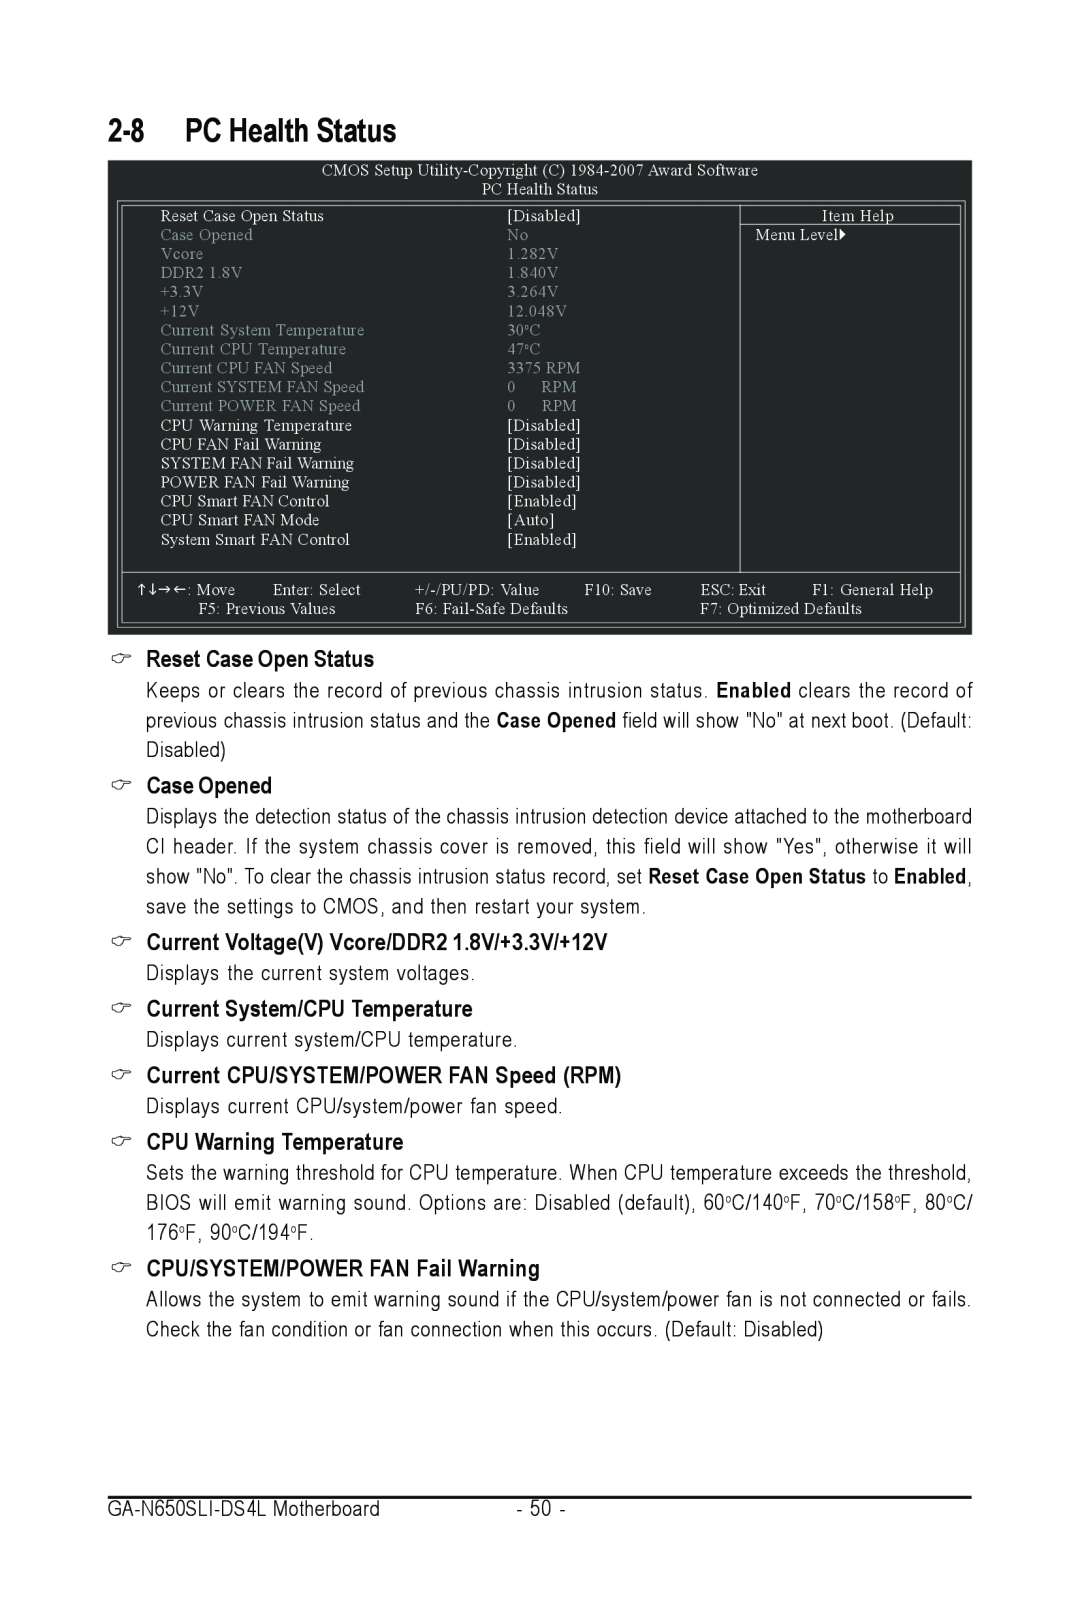 Intel GA-N650SLI-DS4L PC Health Status, Reset Case Open Status, Case Opened, Current VoltageV Vcore/DDR2 1.8V/+3.3V/+12V 